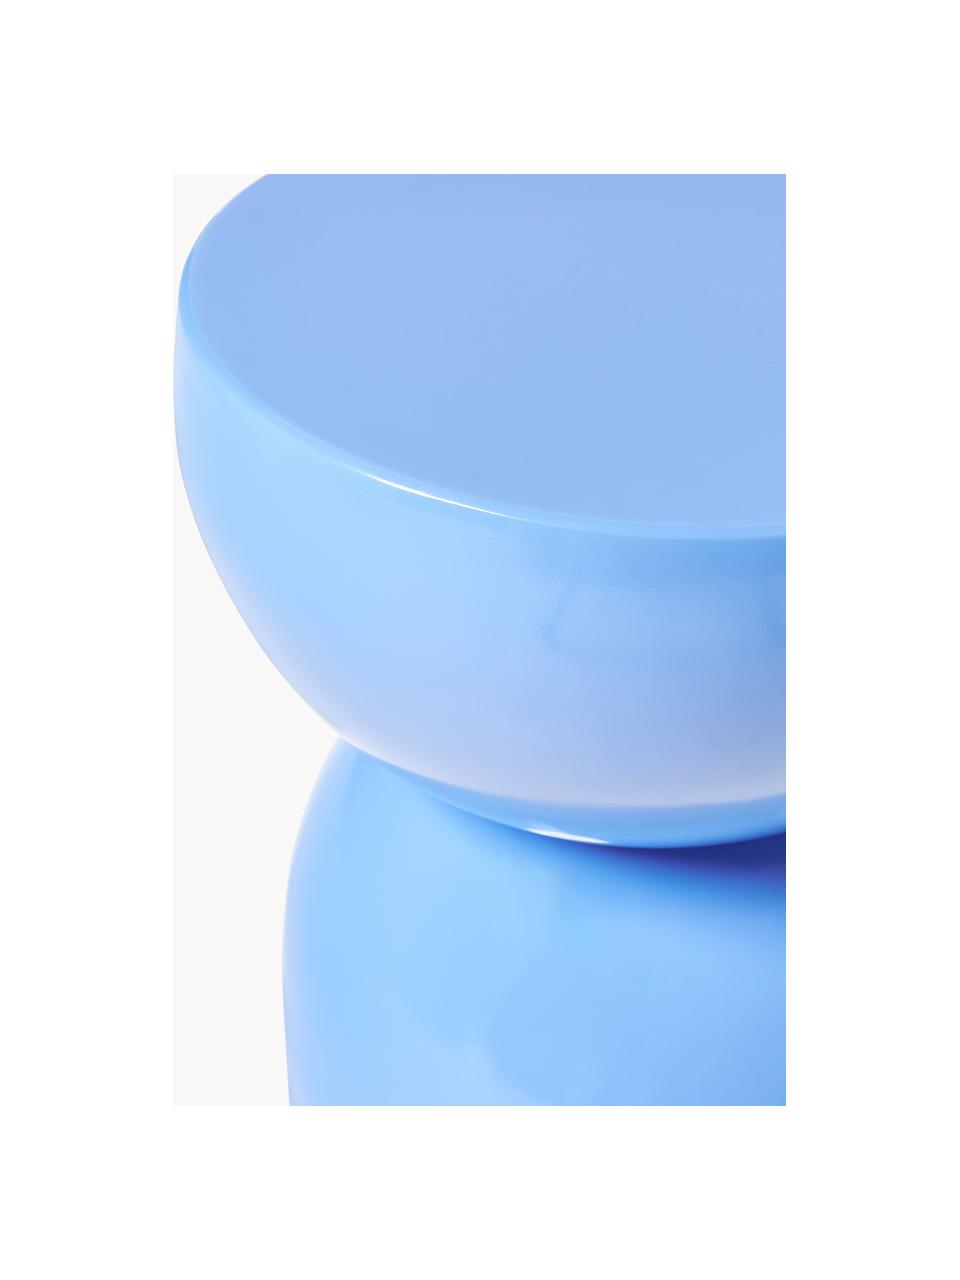 Interiérový/exteriérový odkládací stolek Gigi, Umělá hmota, kov s práškovým nástřikem, Modrá, Š 45 cm, V 55 cm